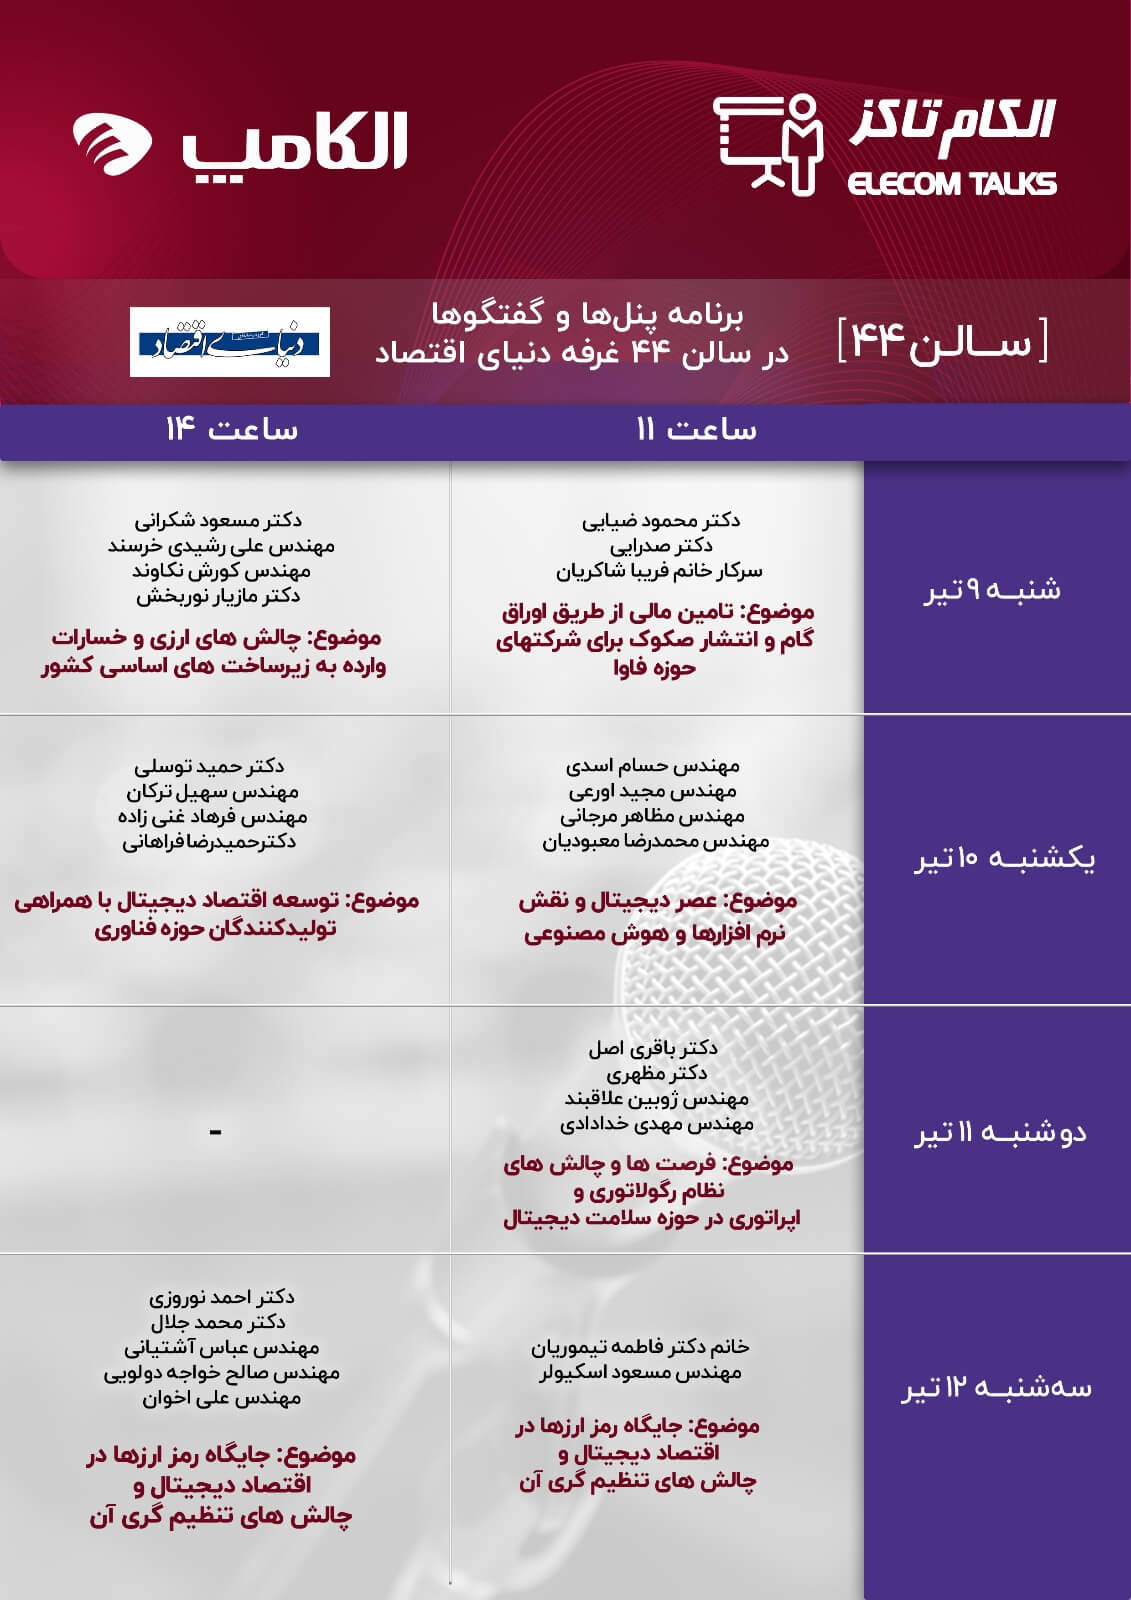 برنامه جامع الکان تاکز الکامپ در بیست و هفتمین نمایشگاه الکامپ تهران سالن ۴۴ خبرگزاری دنیای اقتصاد